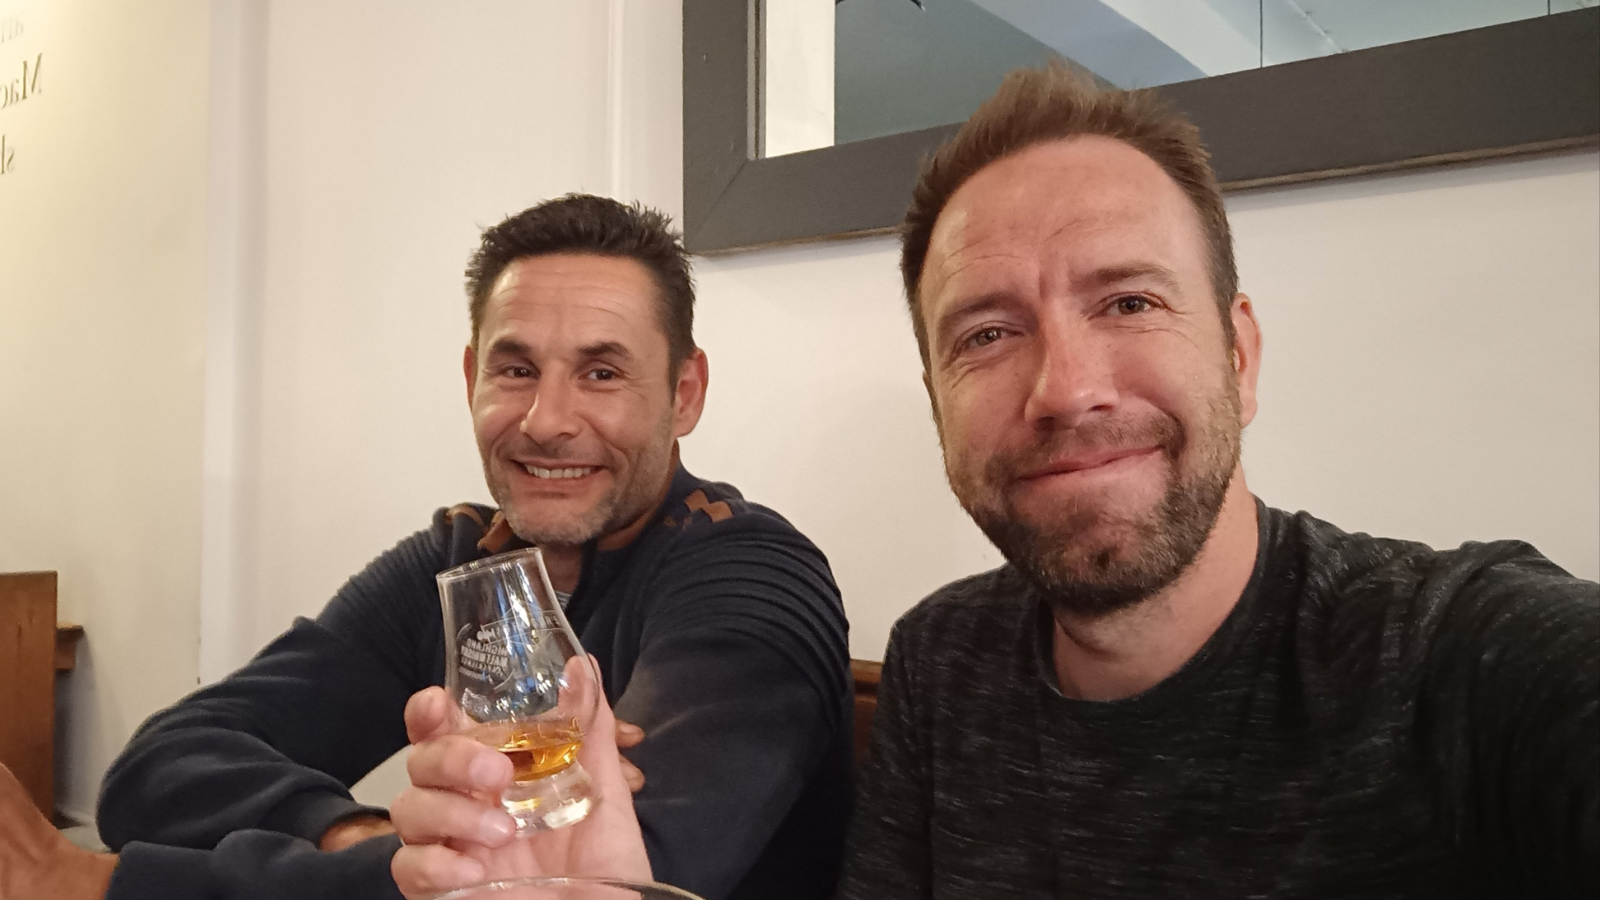 Whisky drinken in de hooglanden van Schotland